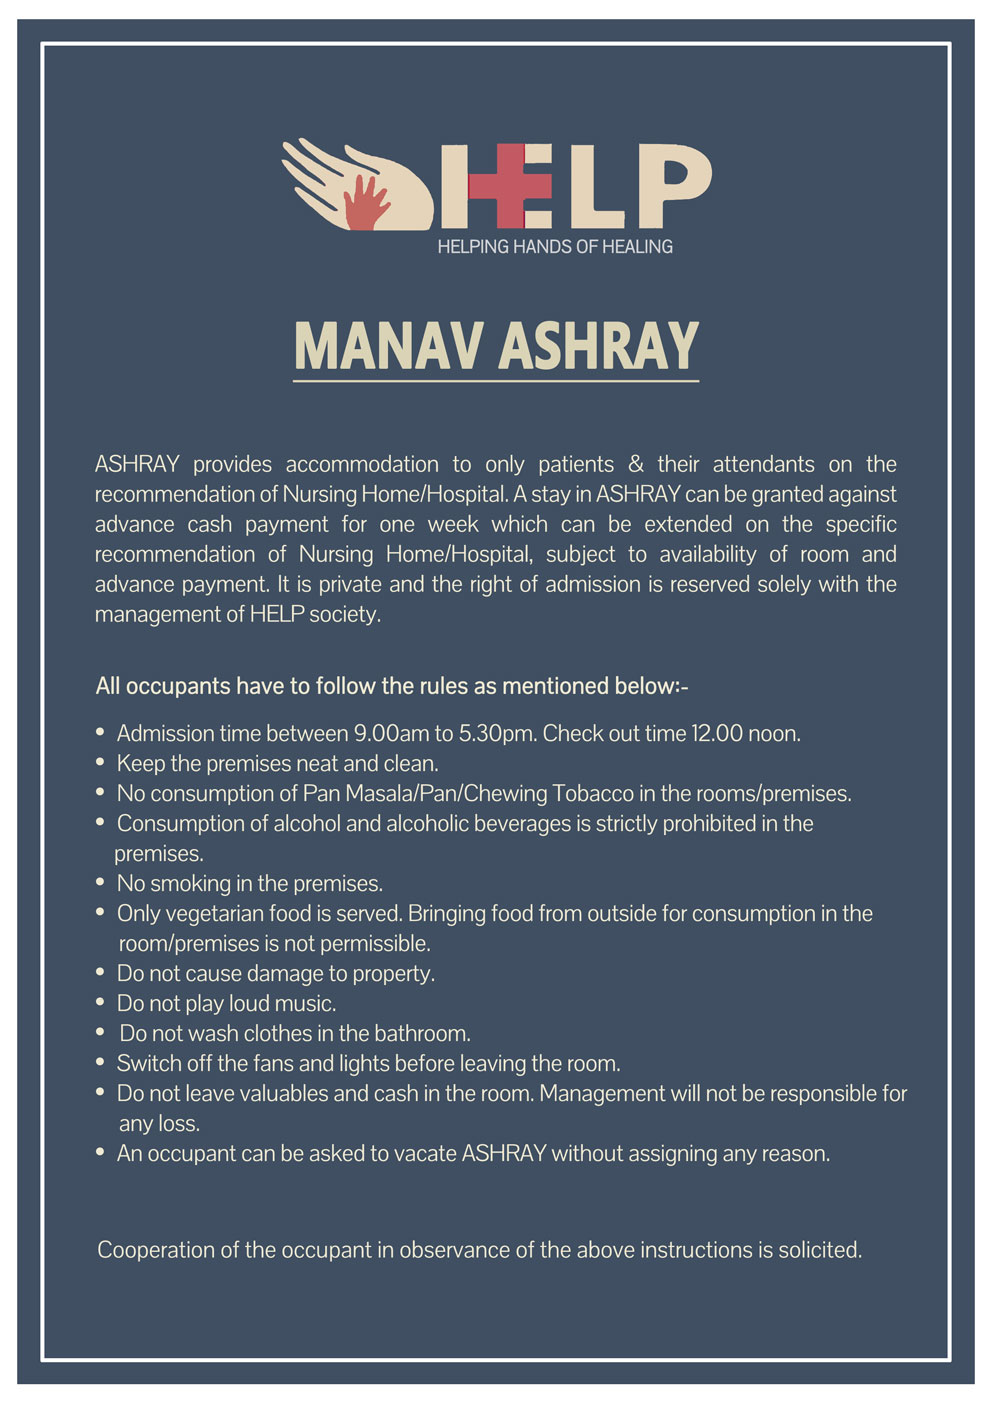 Manav Ashray